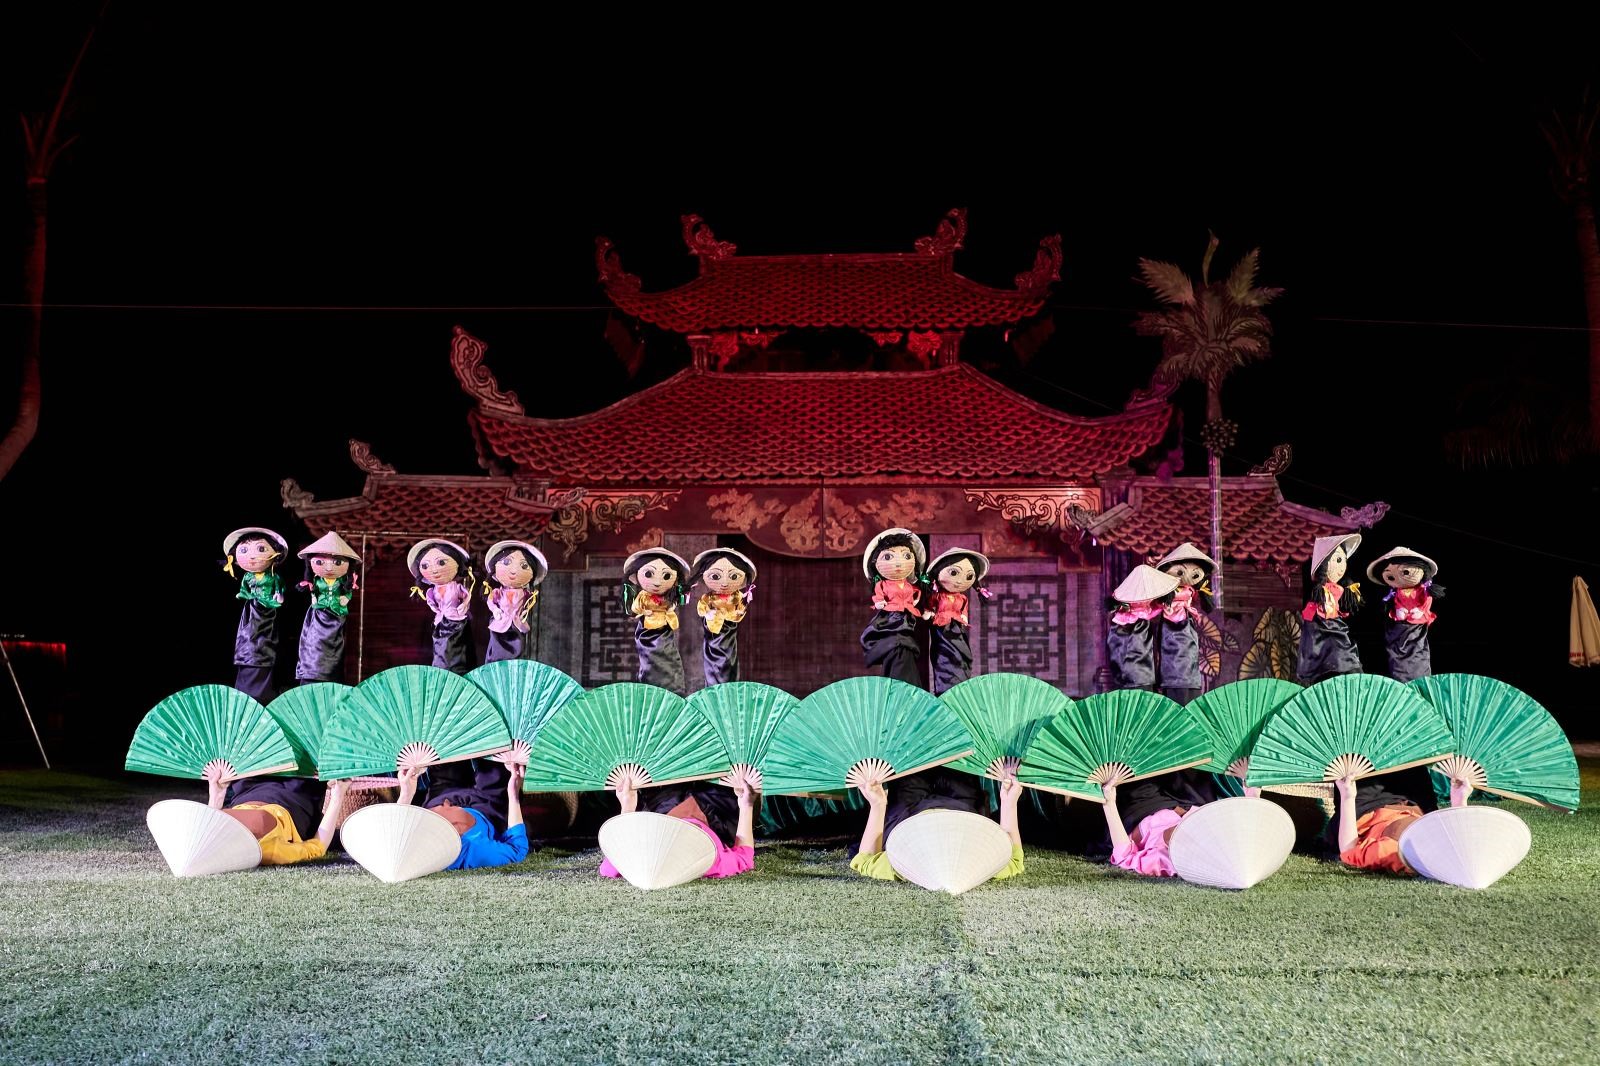 Sân khấu thủy đình Rối Việt tái hiện thủy đình Chùa Thầy tại Hà Nội, là tổ nghề múa rối Việt Nam.